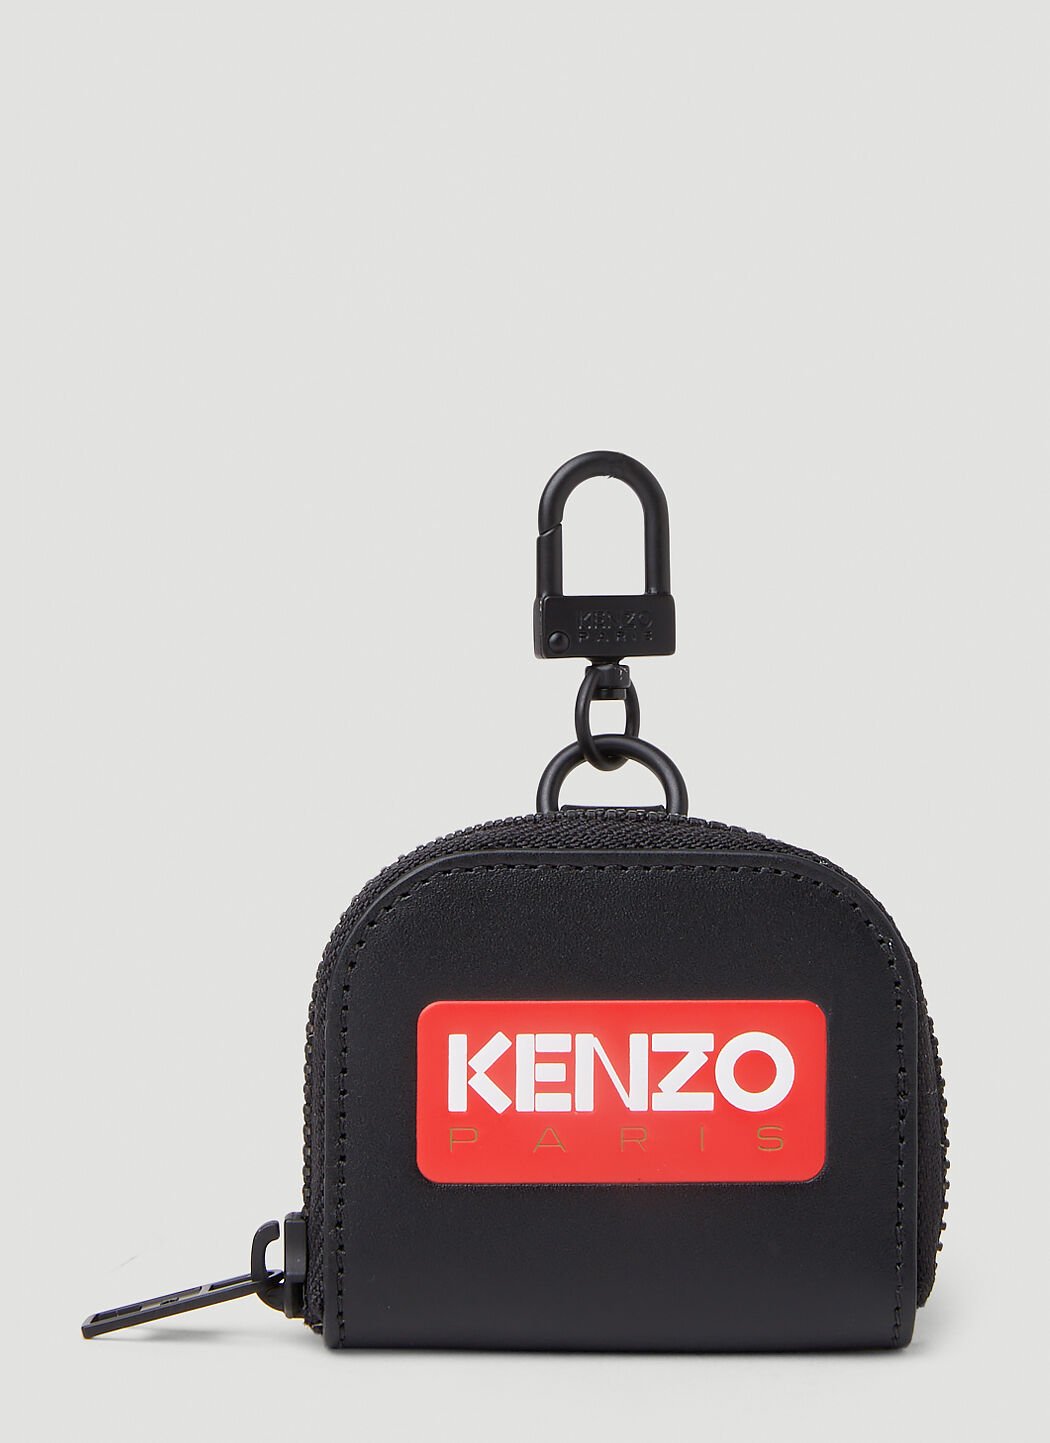 Kenzo 徽标贴饰 AirPods 保护套 绿色 knz0253017